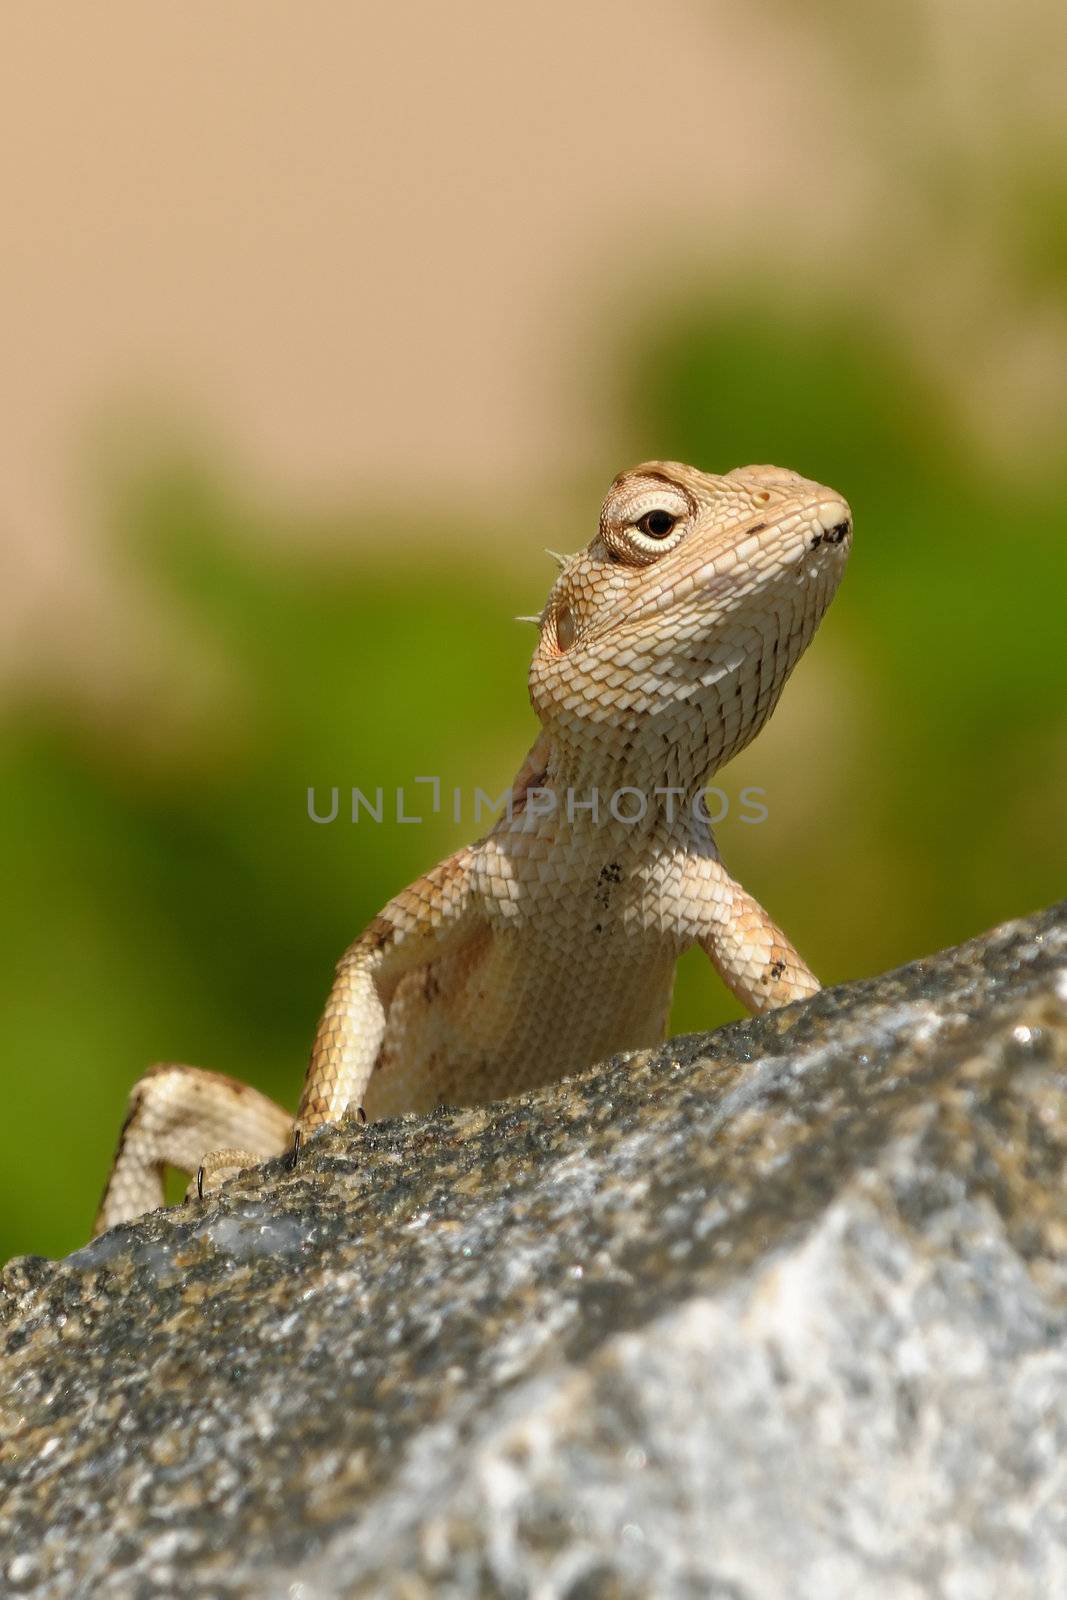 A garden lizard taking a sun bath